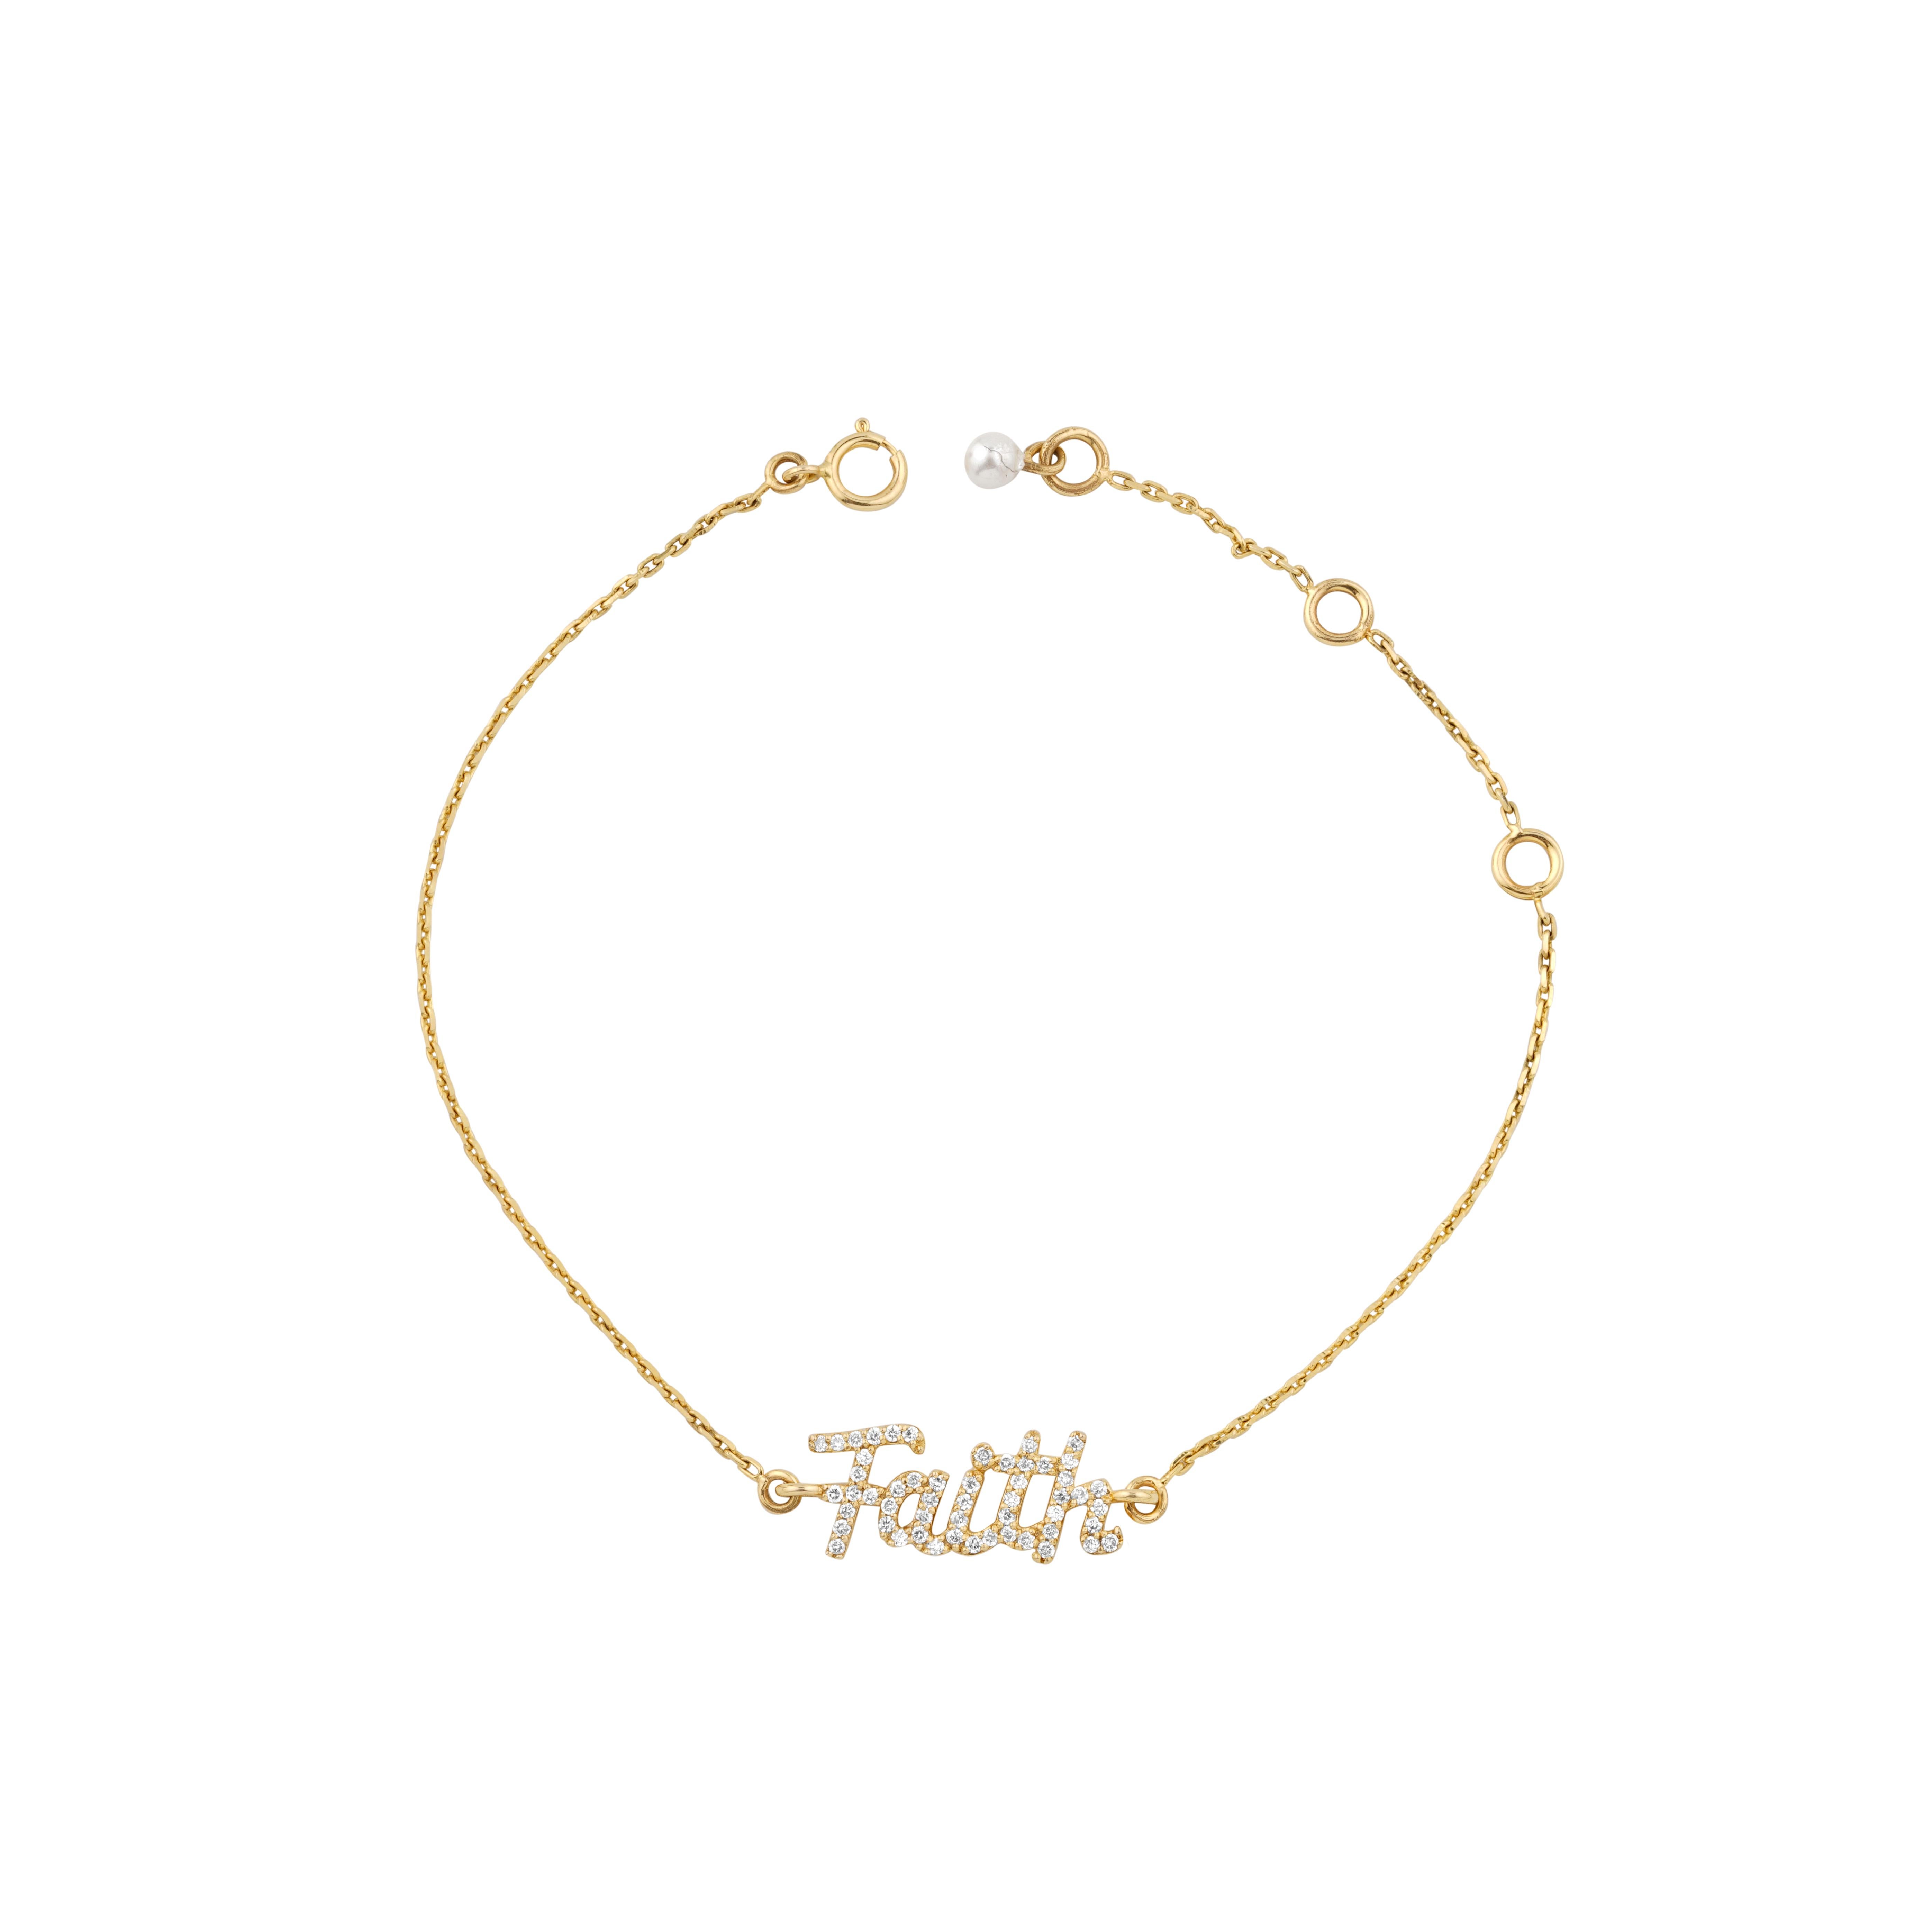 Le Diamond Faith Charm Bracelet est un bracelet délicat dont le motif central est le mot 